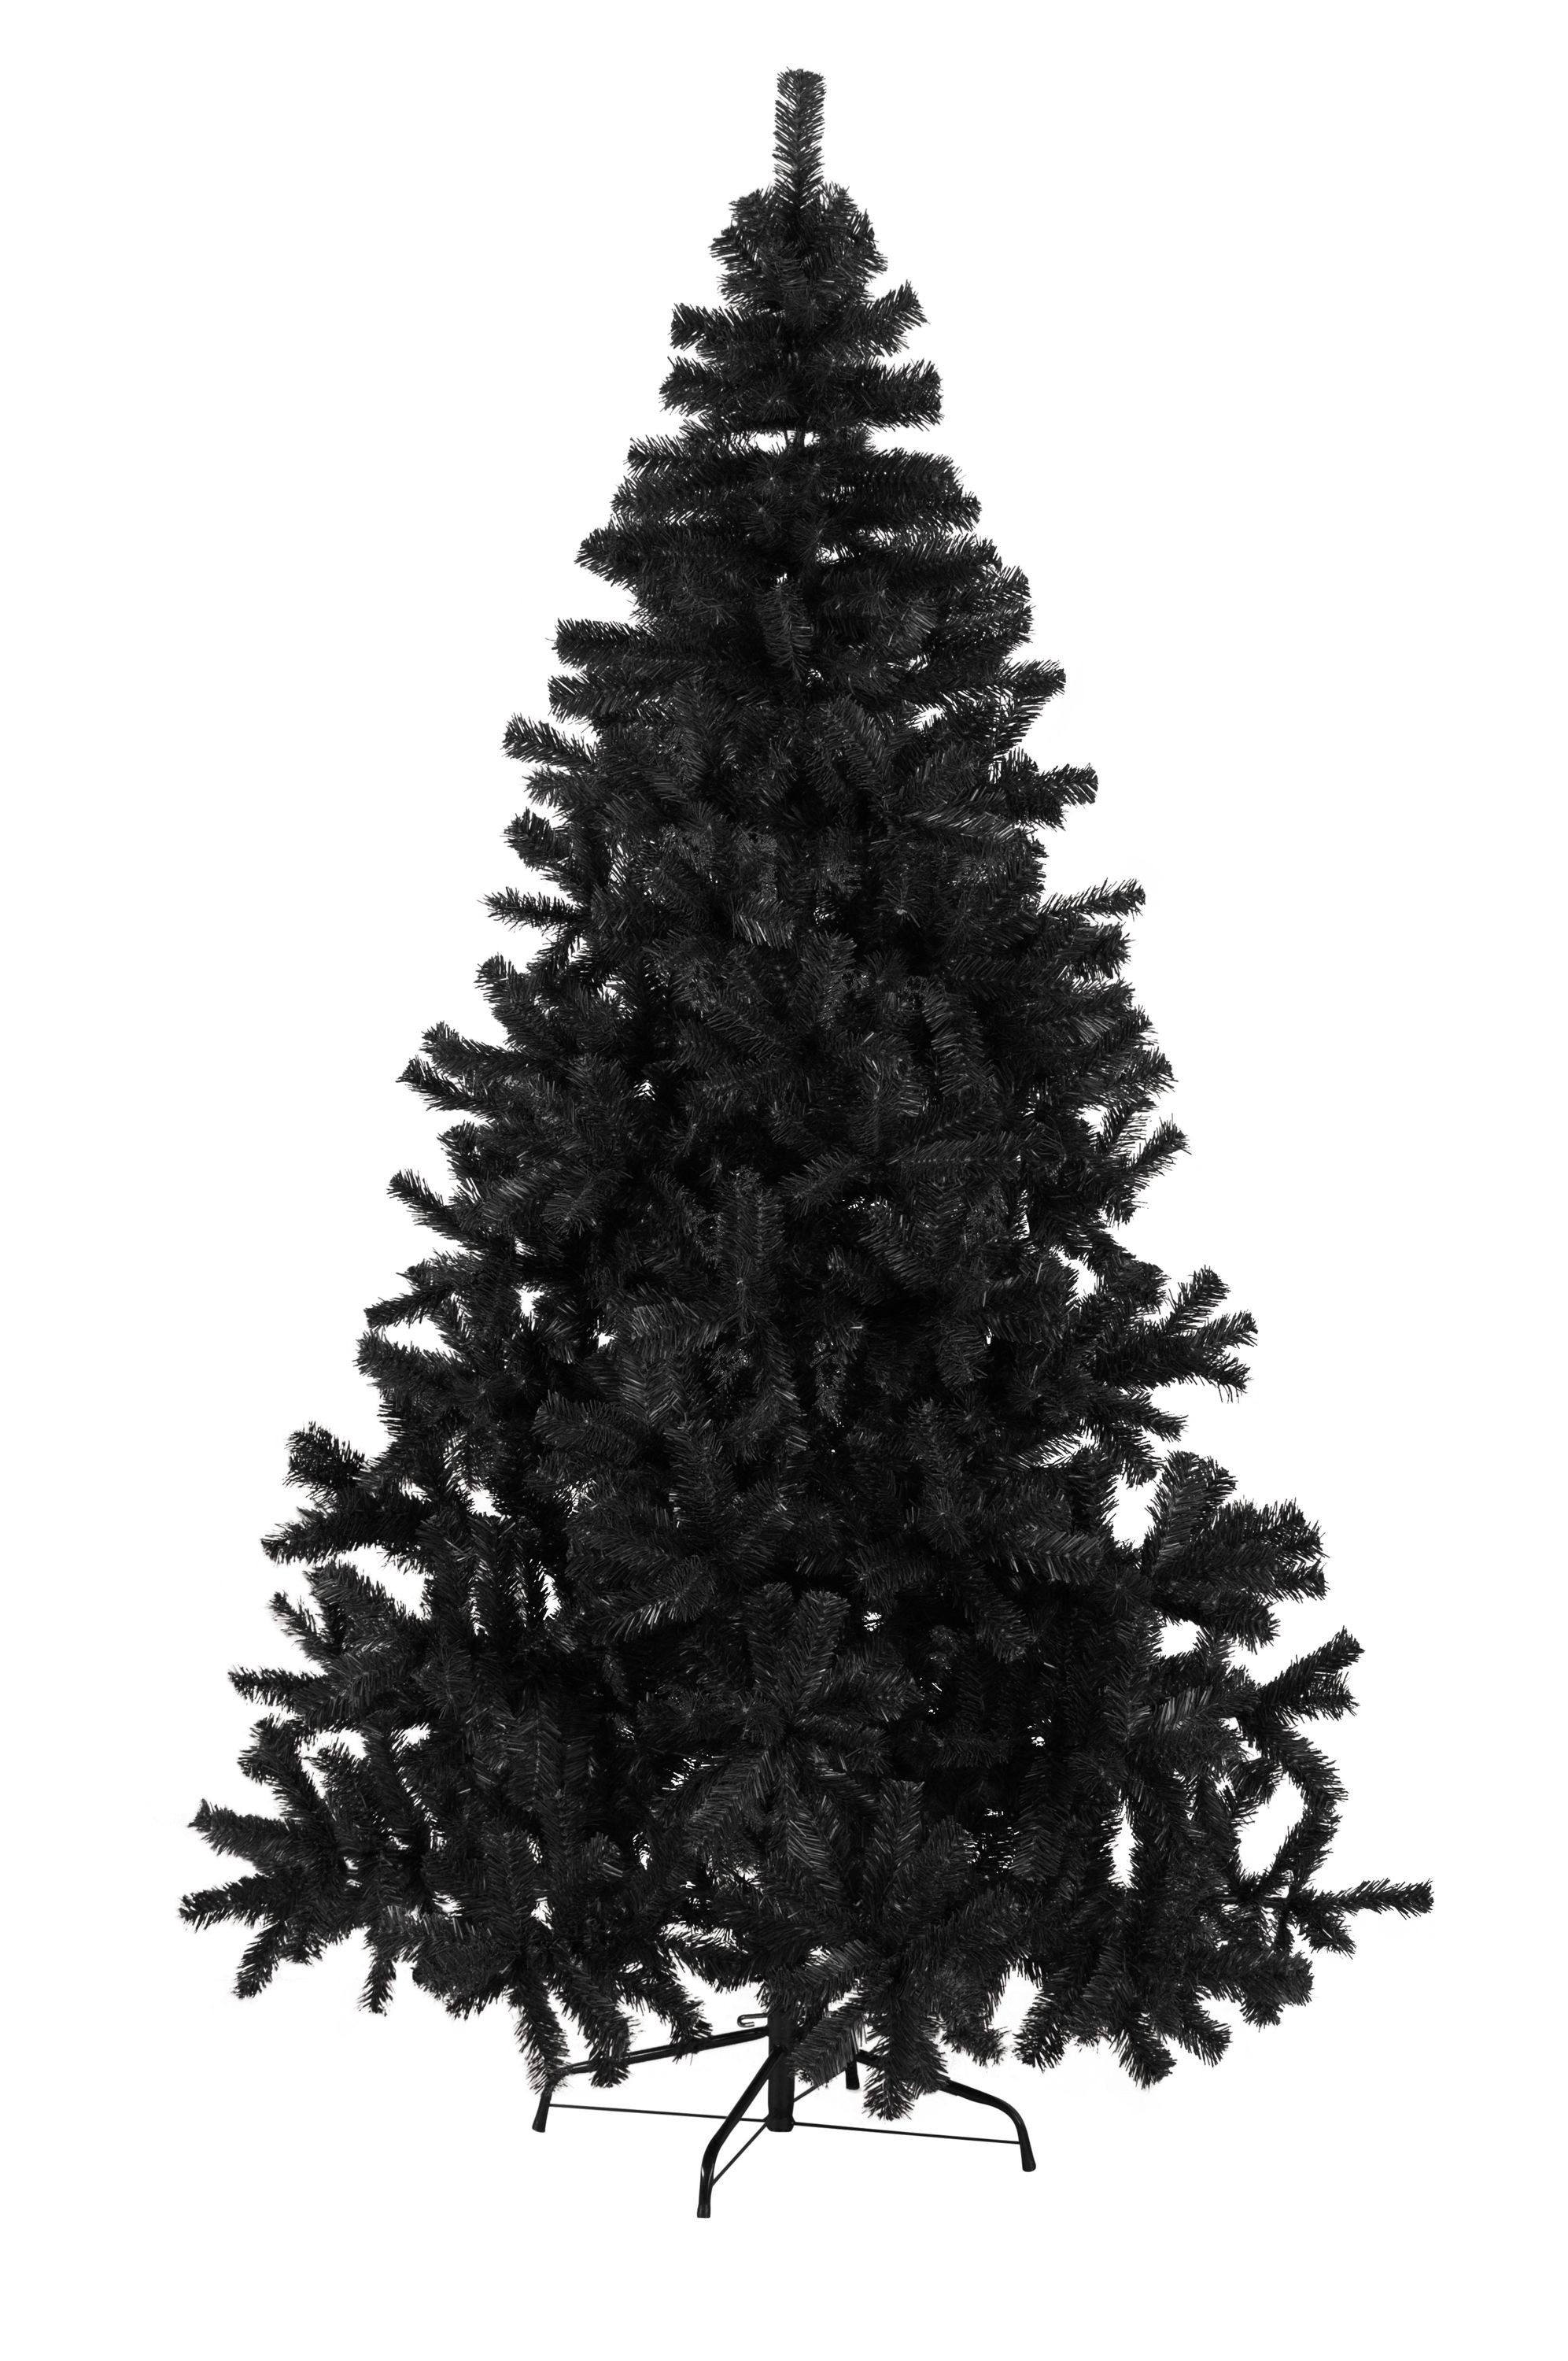 STAR TRADING Künstlicher Weihnachtsbaum Weihnachtsbaum Quebec Größe: 210 cm H x 130 cm Ø, Farbe: Schwarz